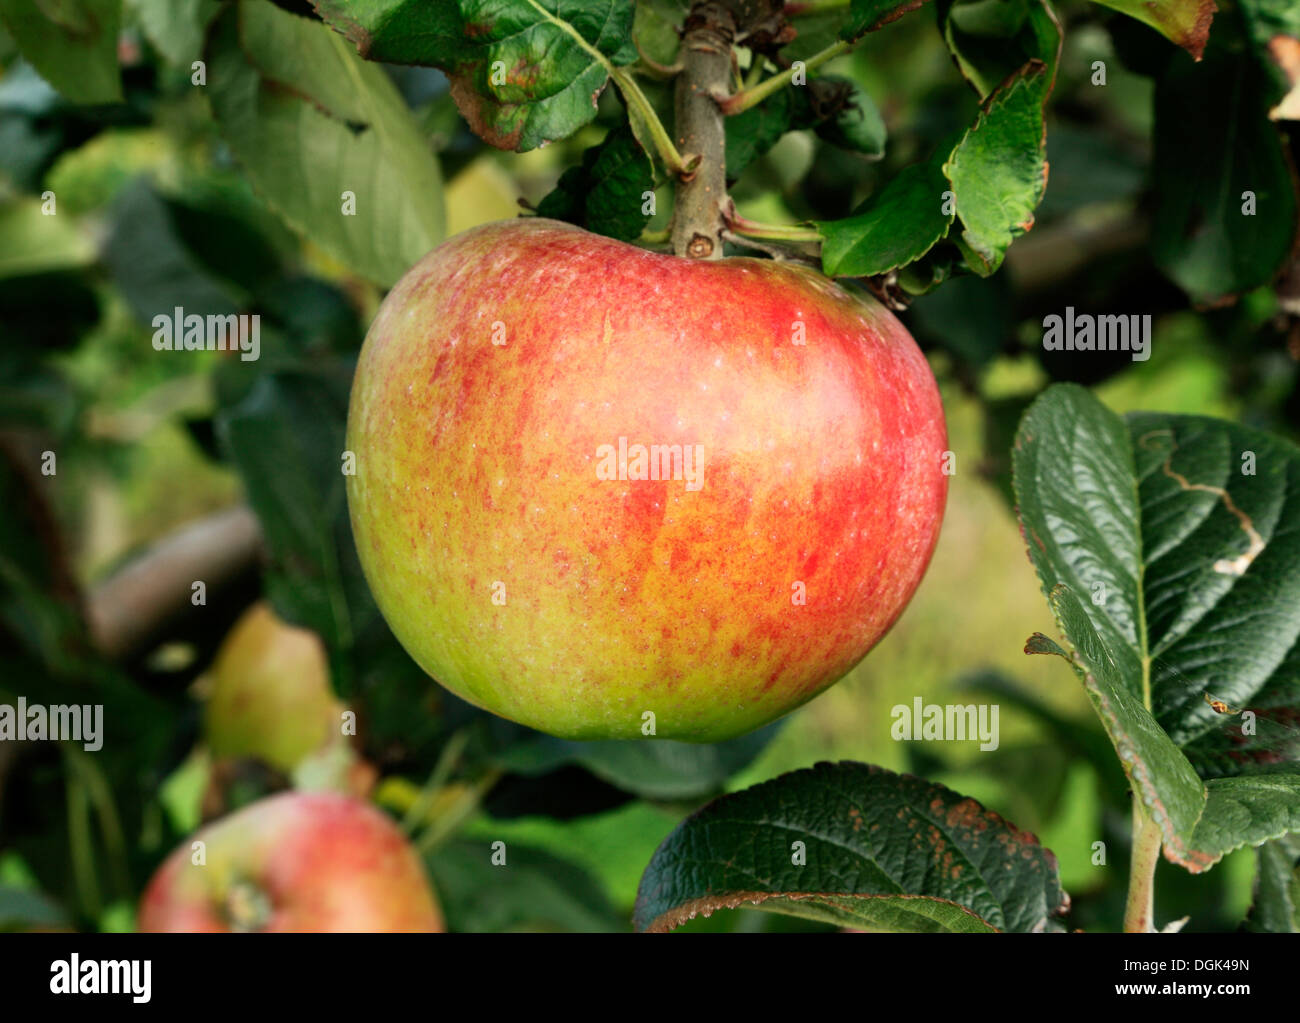 Apple 'Howgate Wonder',   malus domestica apples variety varieties growing on tree Stock Photo